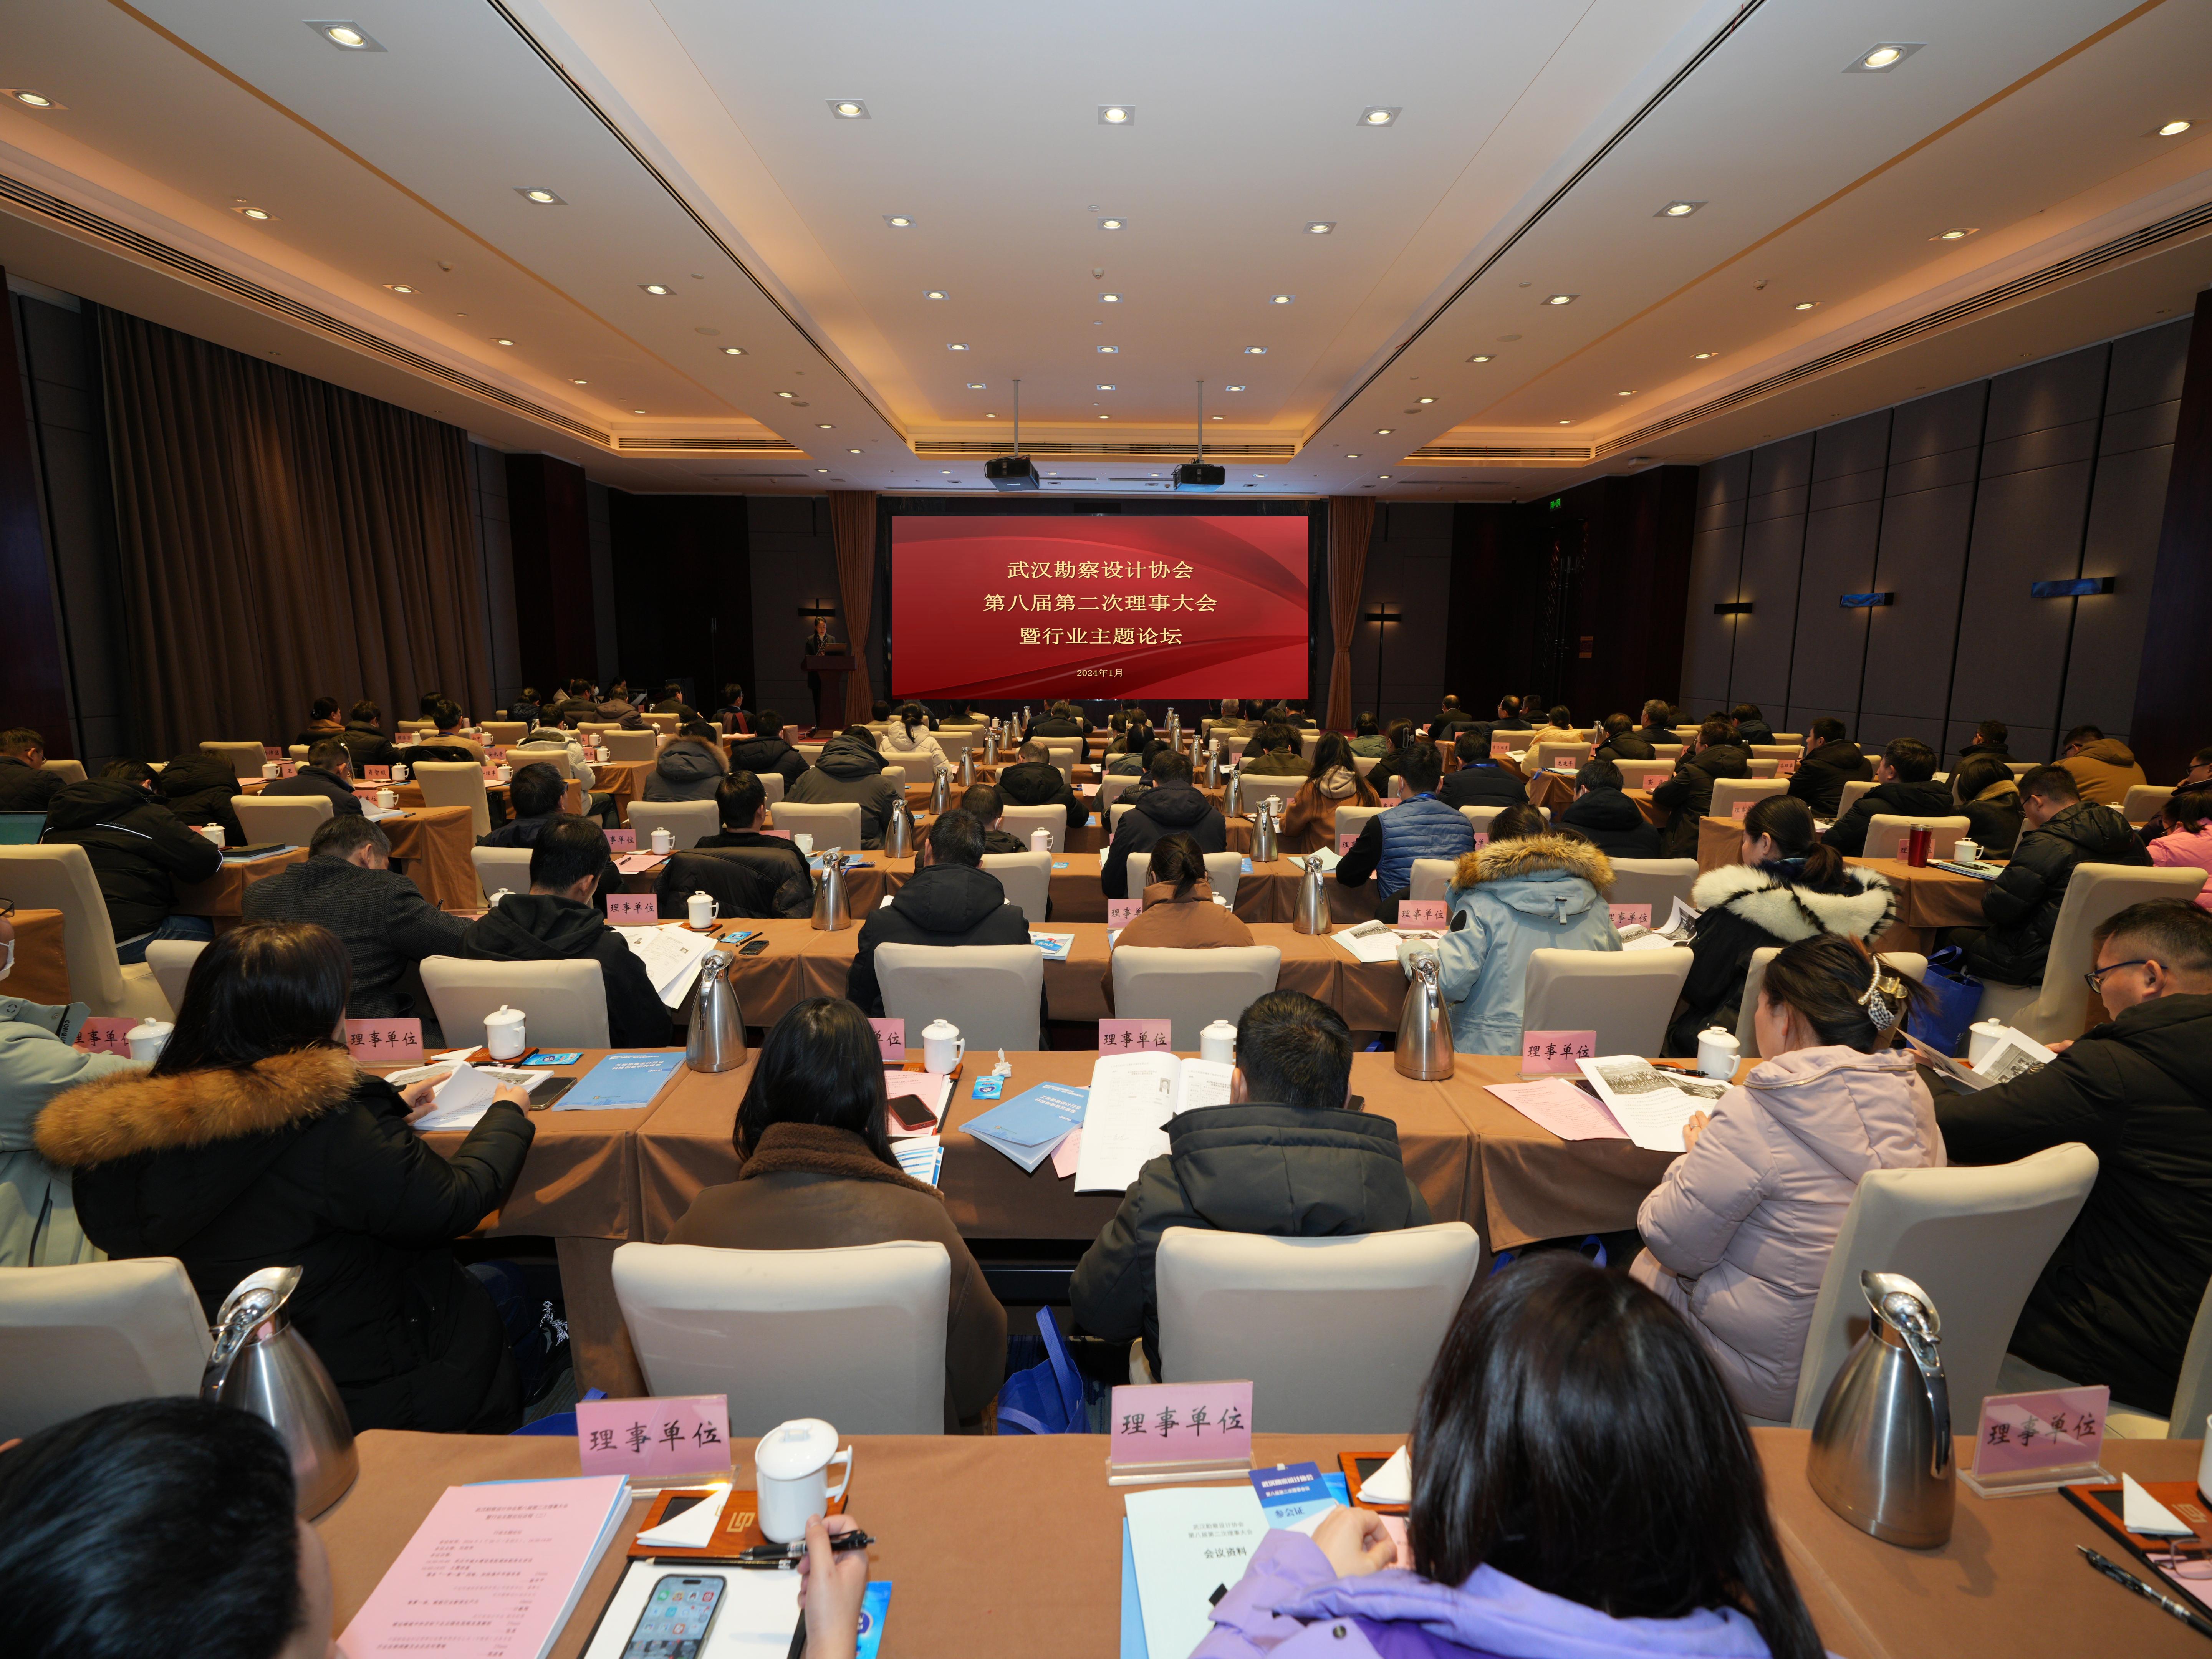 武汉勘察设计协会第八届第二次理事大会暨行业主题论坛顺利召开